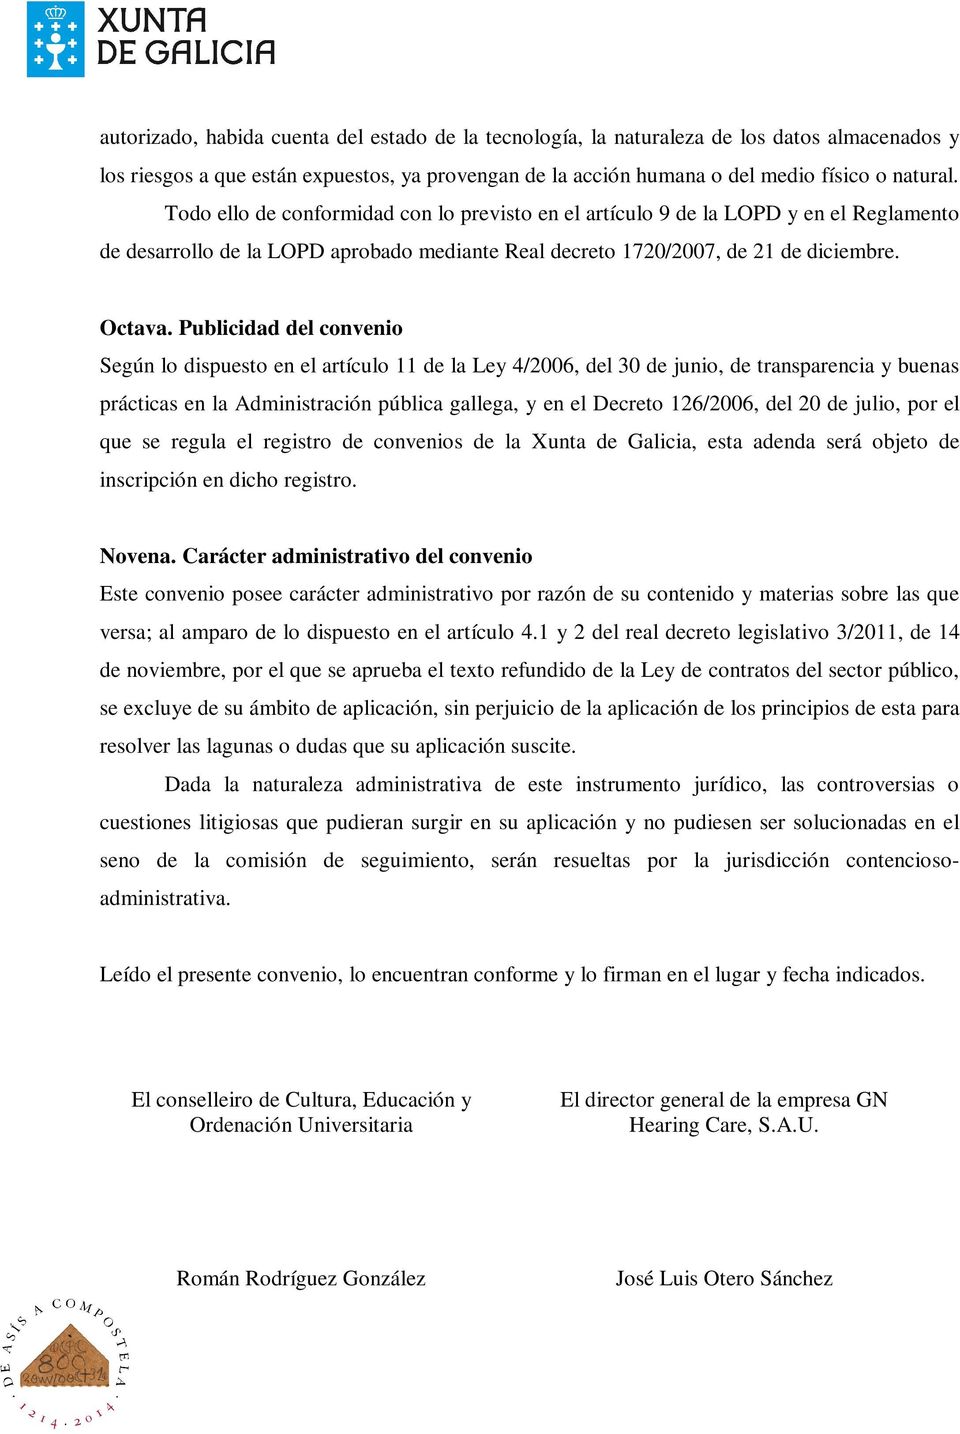 Publicidad del convenio Según lo dispuesto en el artículo 11 de la Ley 4/2006, del 30 de junio, de transparencia y buenas prácticas en la Administración pública gallega, y en el Decreto 126/2006, del